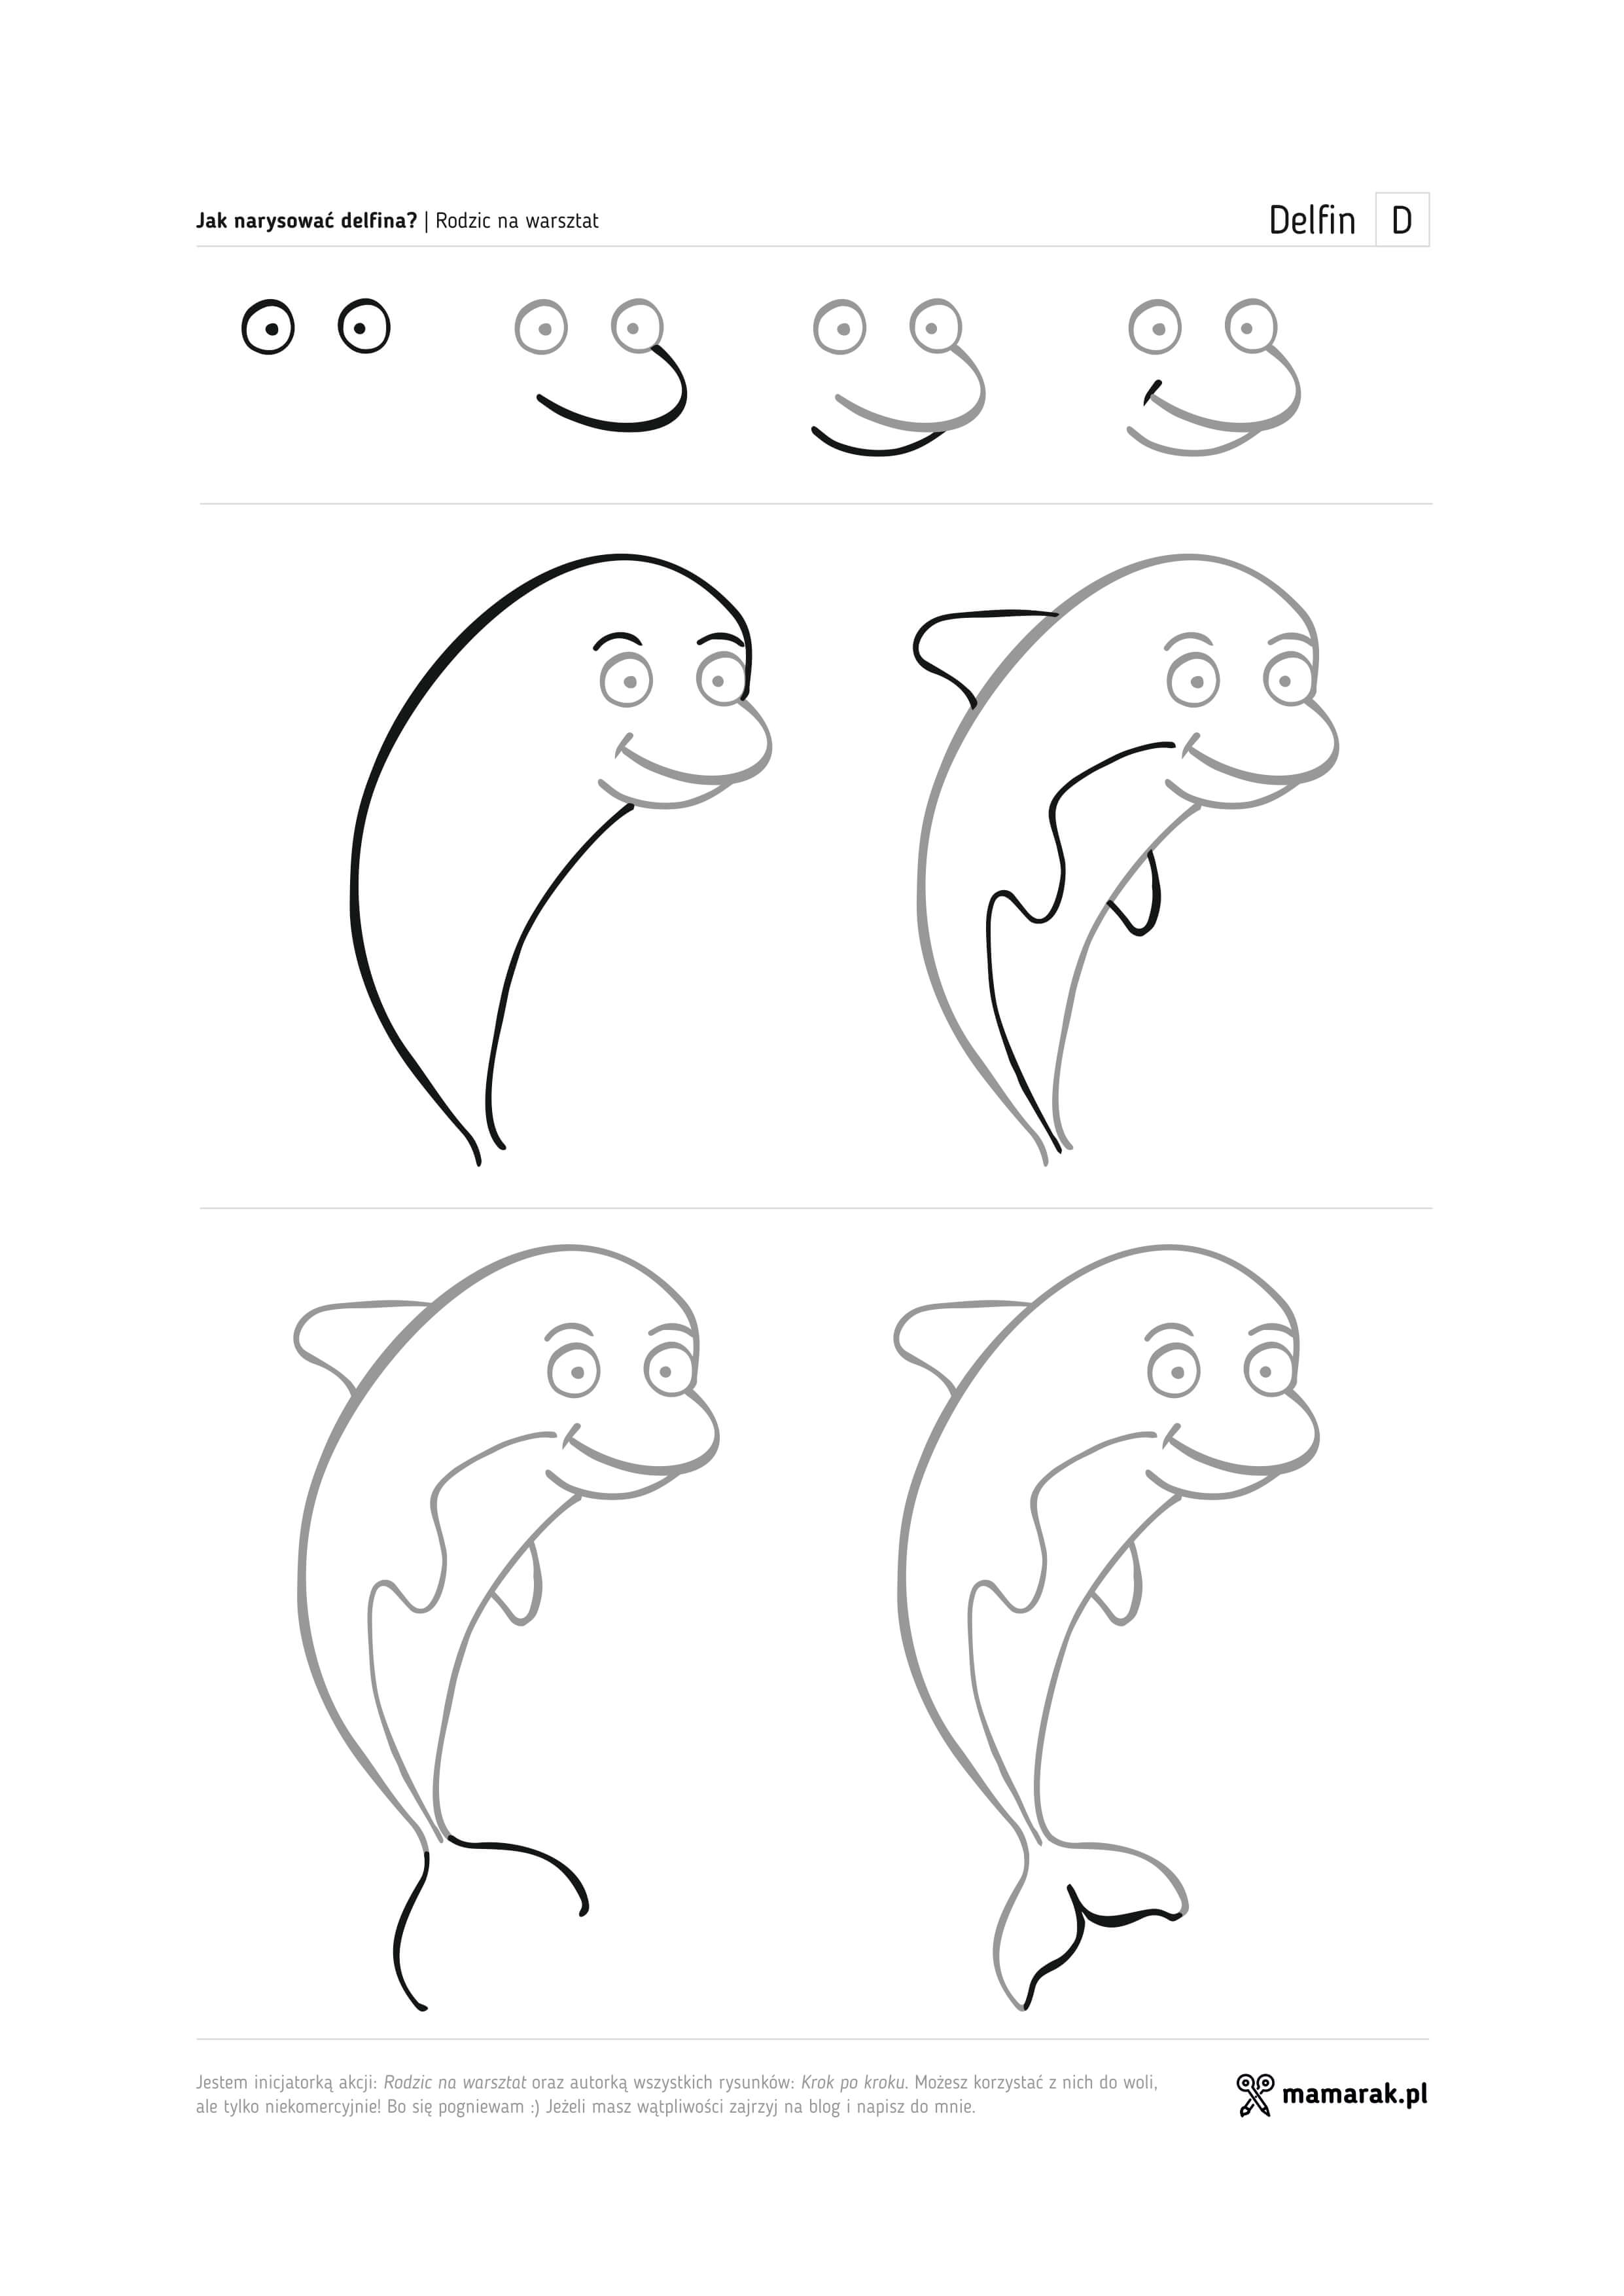 Как нарисовать дельфина поэтапно